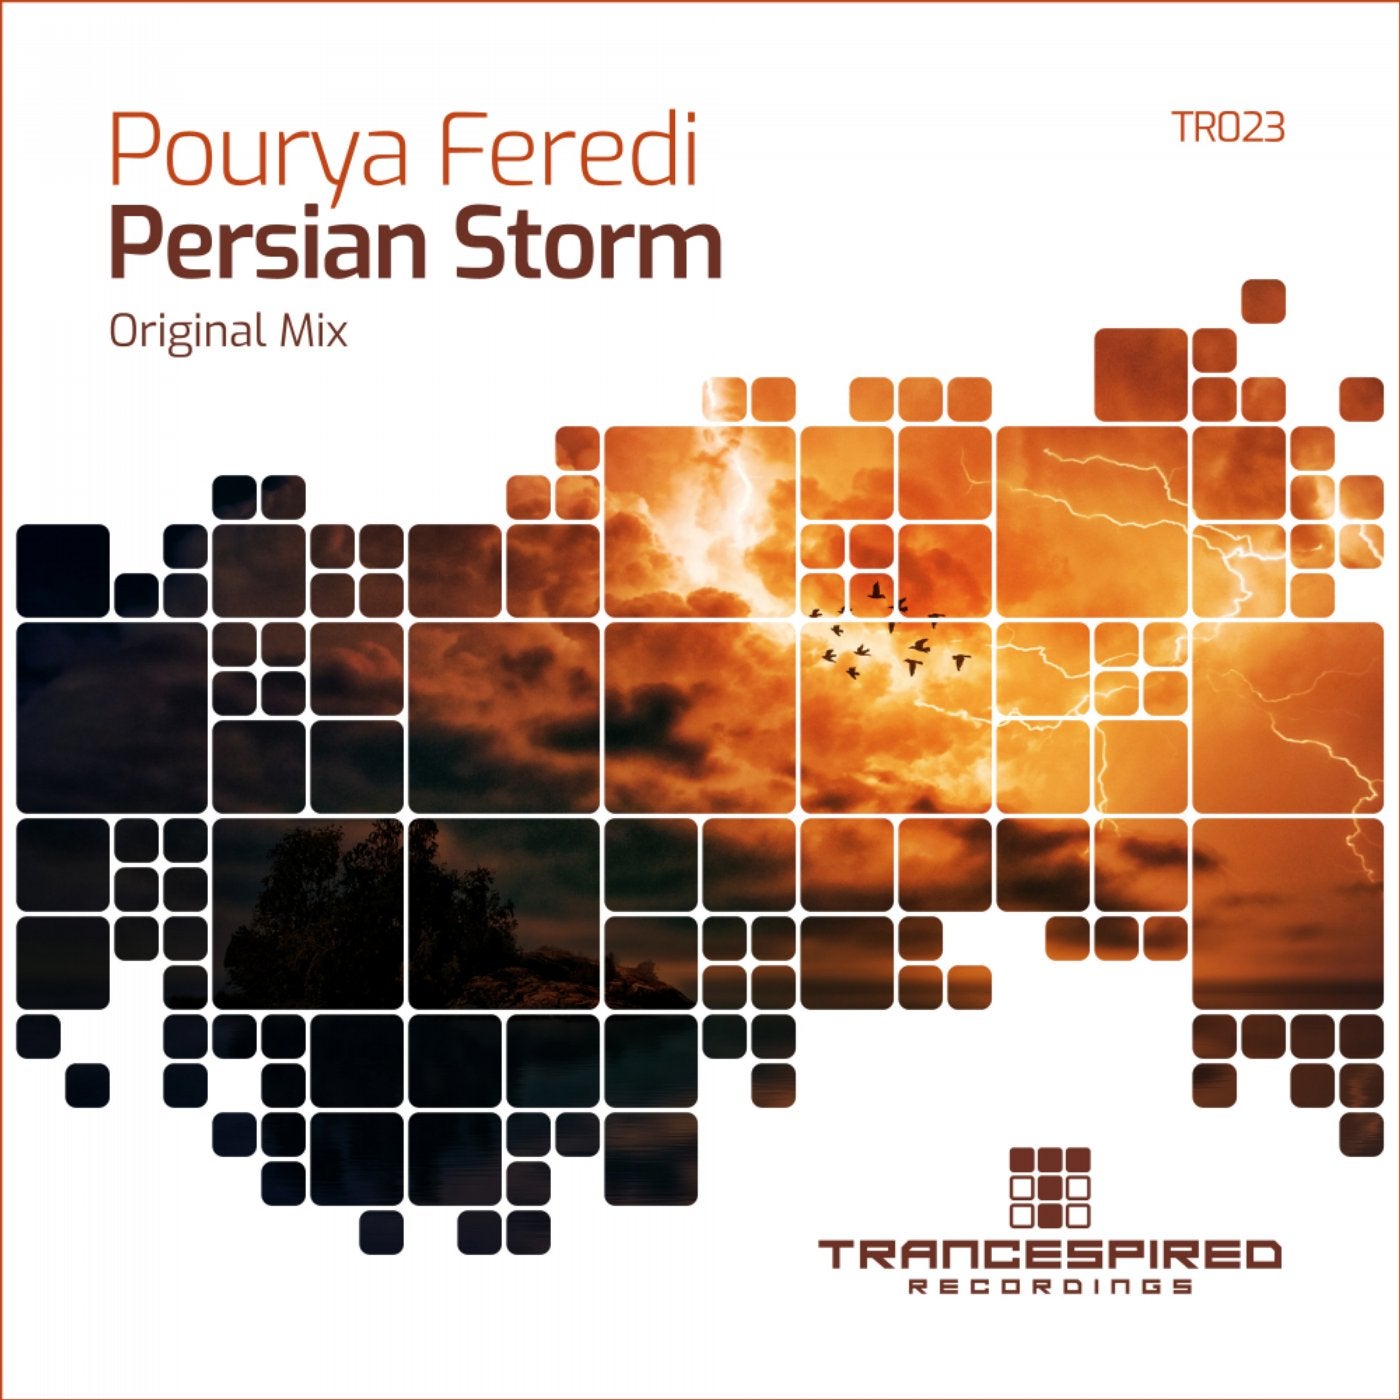 Persian Storm